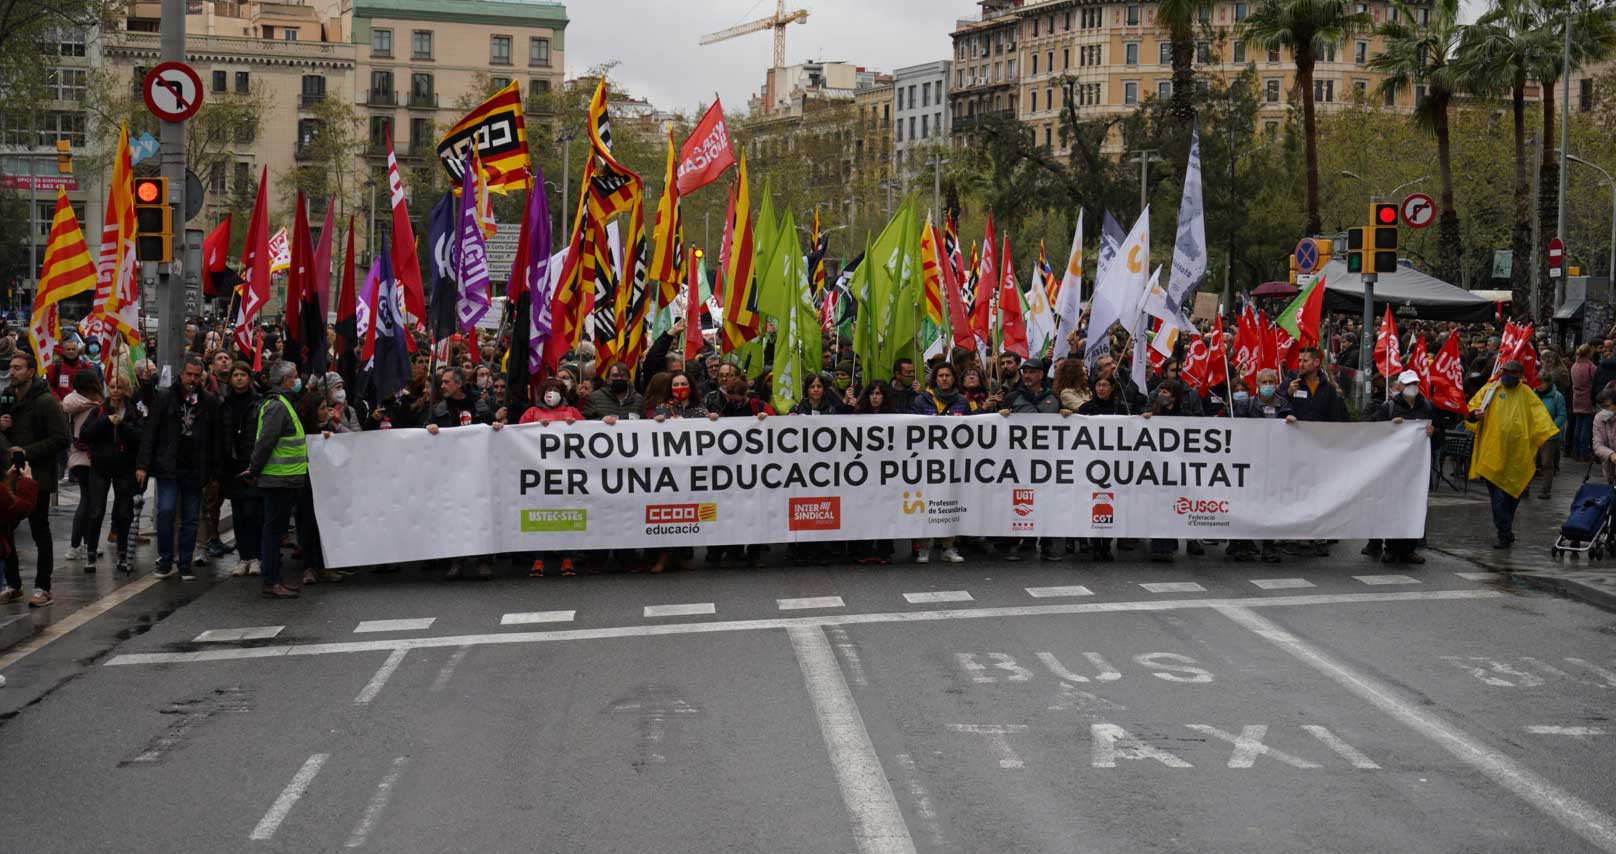 Imagen de una de las manifestaciones durante la huelga educativa en Cataluña en 2022 / LUIS MIGUEL AÑÓN (CG)